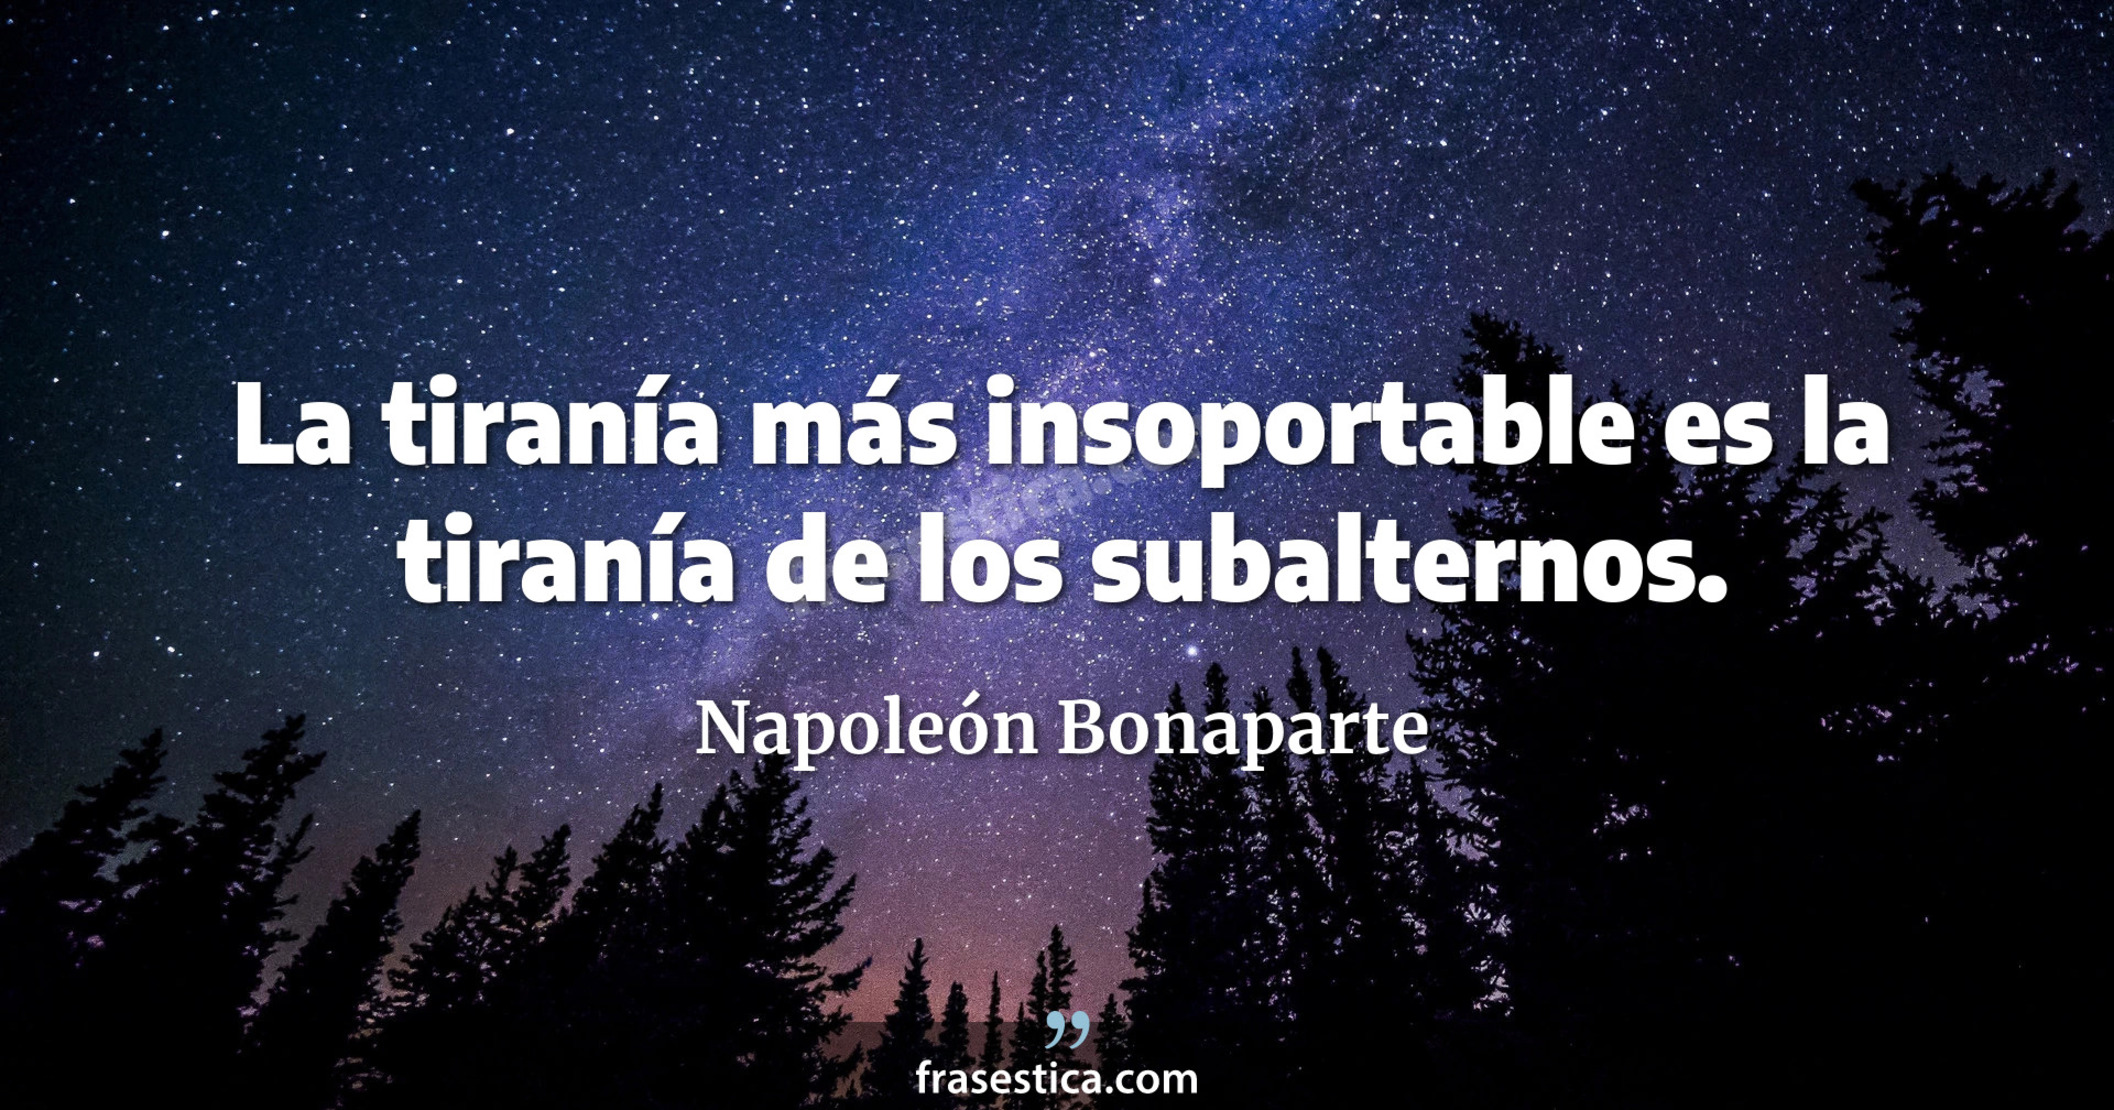 La tiranía más insoportable es la tiranía de los subalternos. - Napoleón Bonaparte